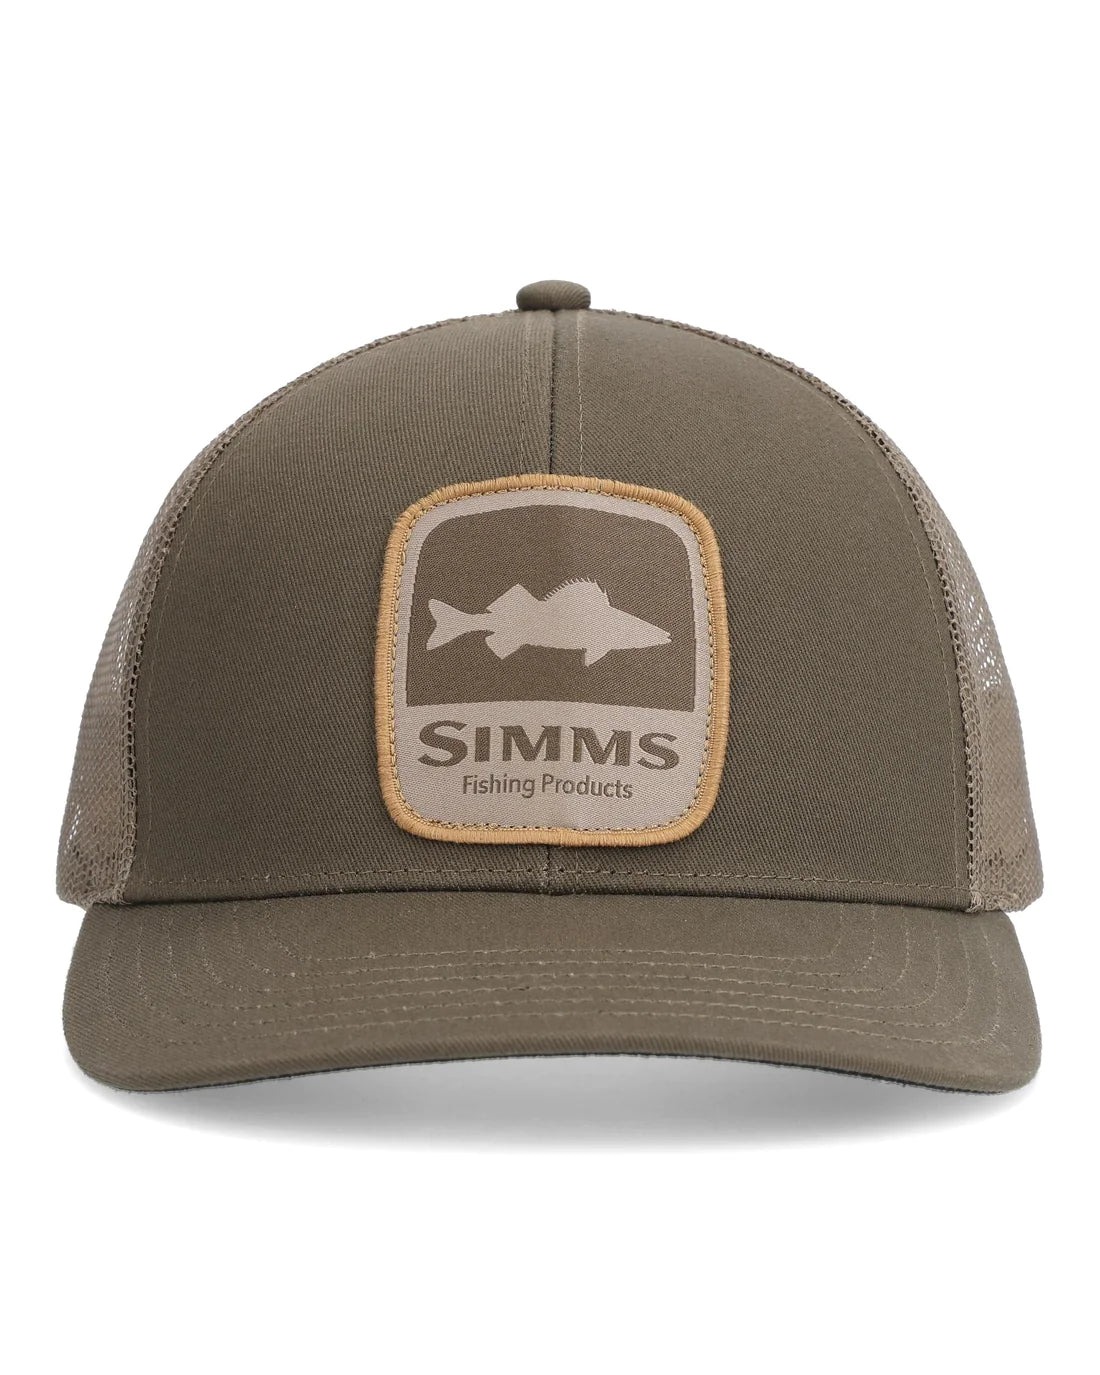 Simms Walleye Trucker Hat